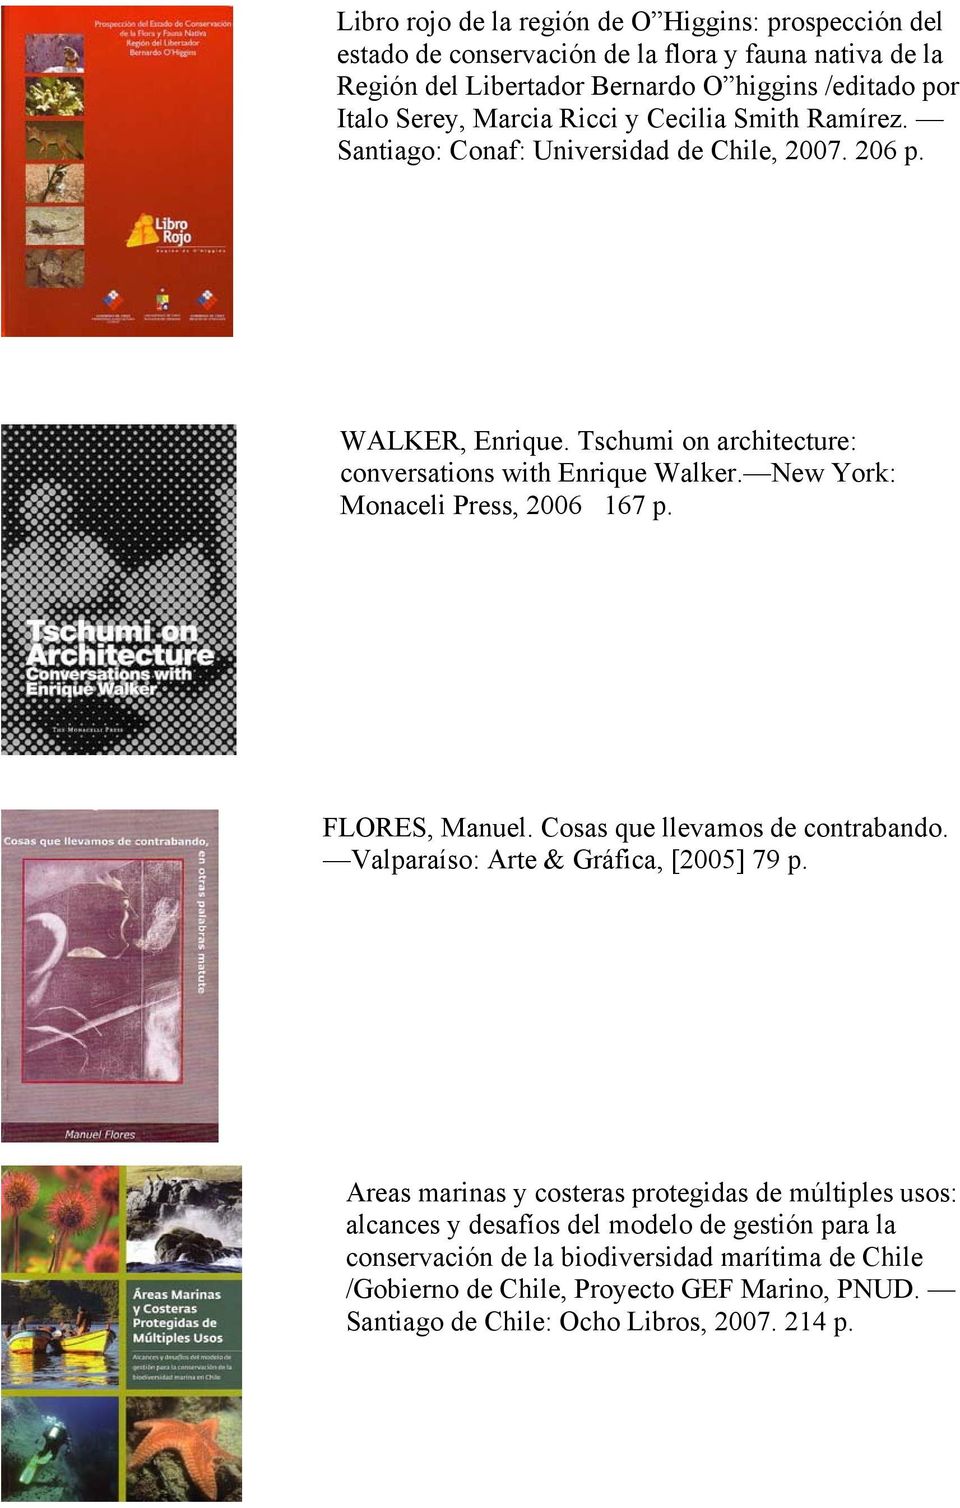 New York: Monaceli Press, 2006 167 p. FLORES, Manuel. Cosas que llevamos de contrabando. Valparaíso: Arte & Gráfica, [2005] 79 p.